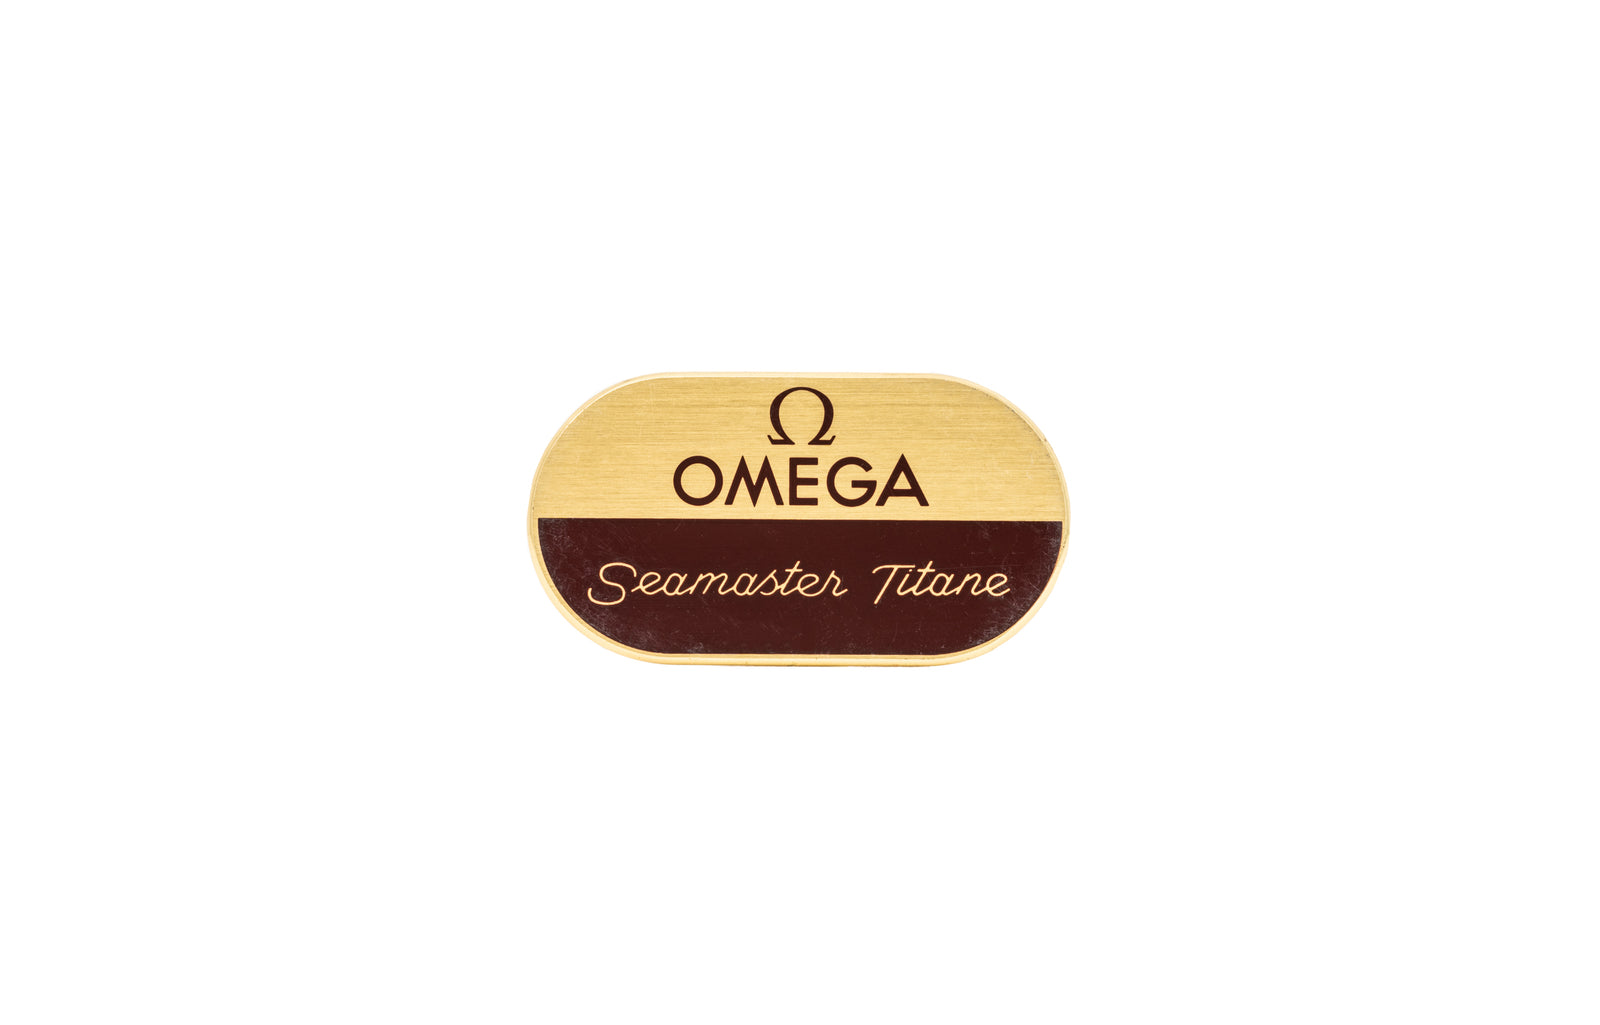 Omega Seamaster Titane Signage